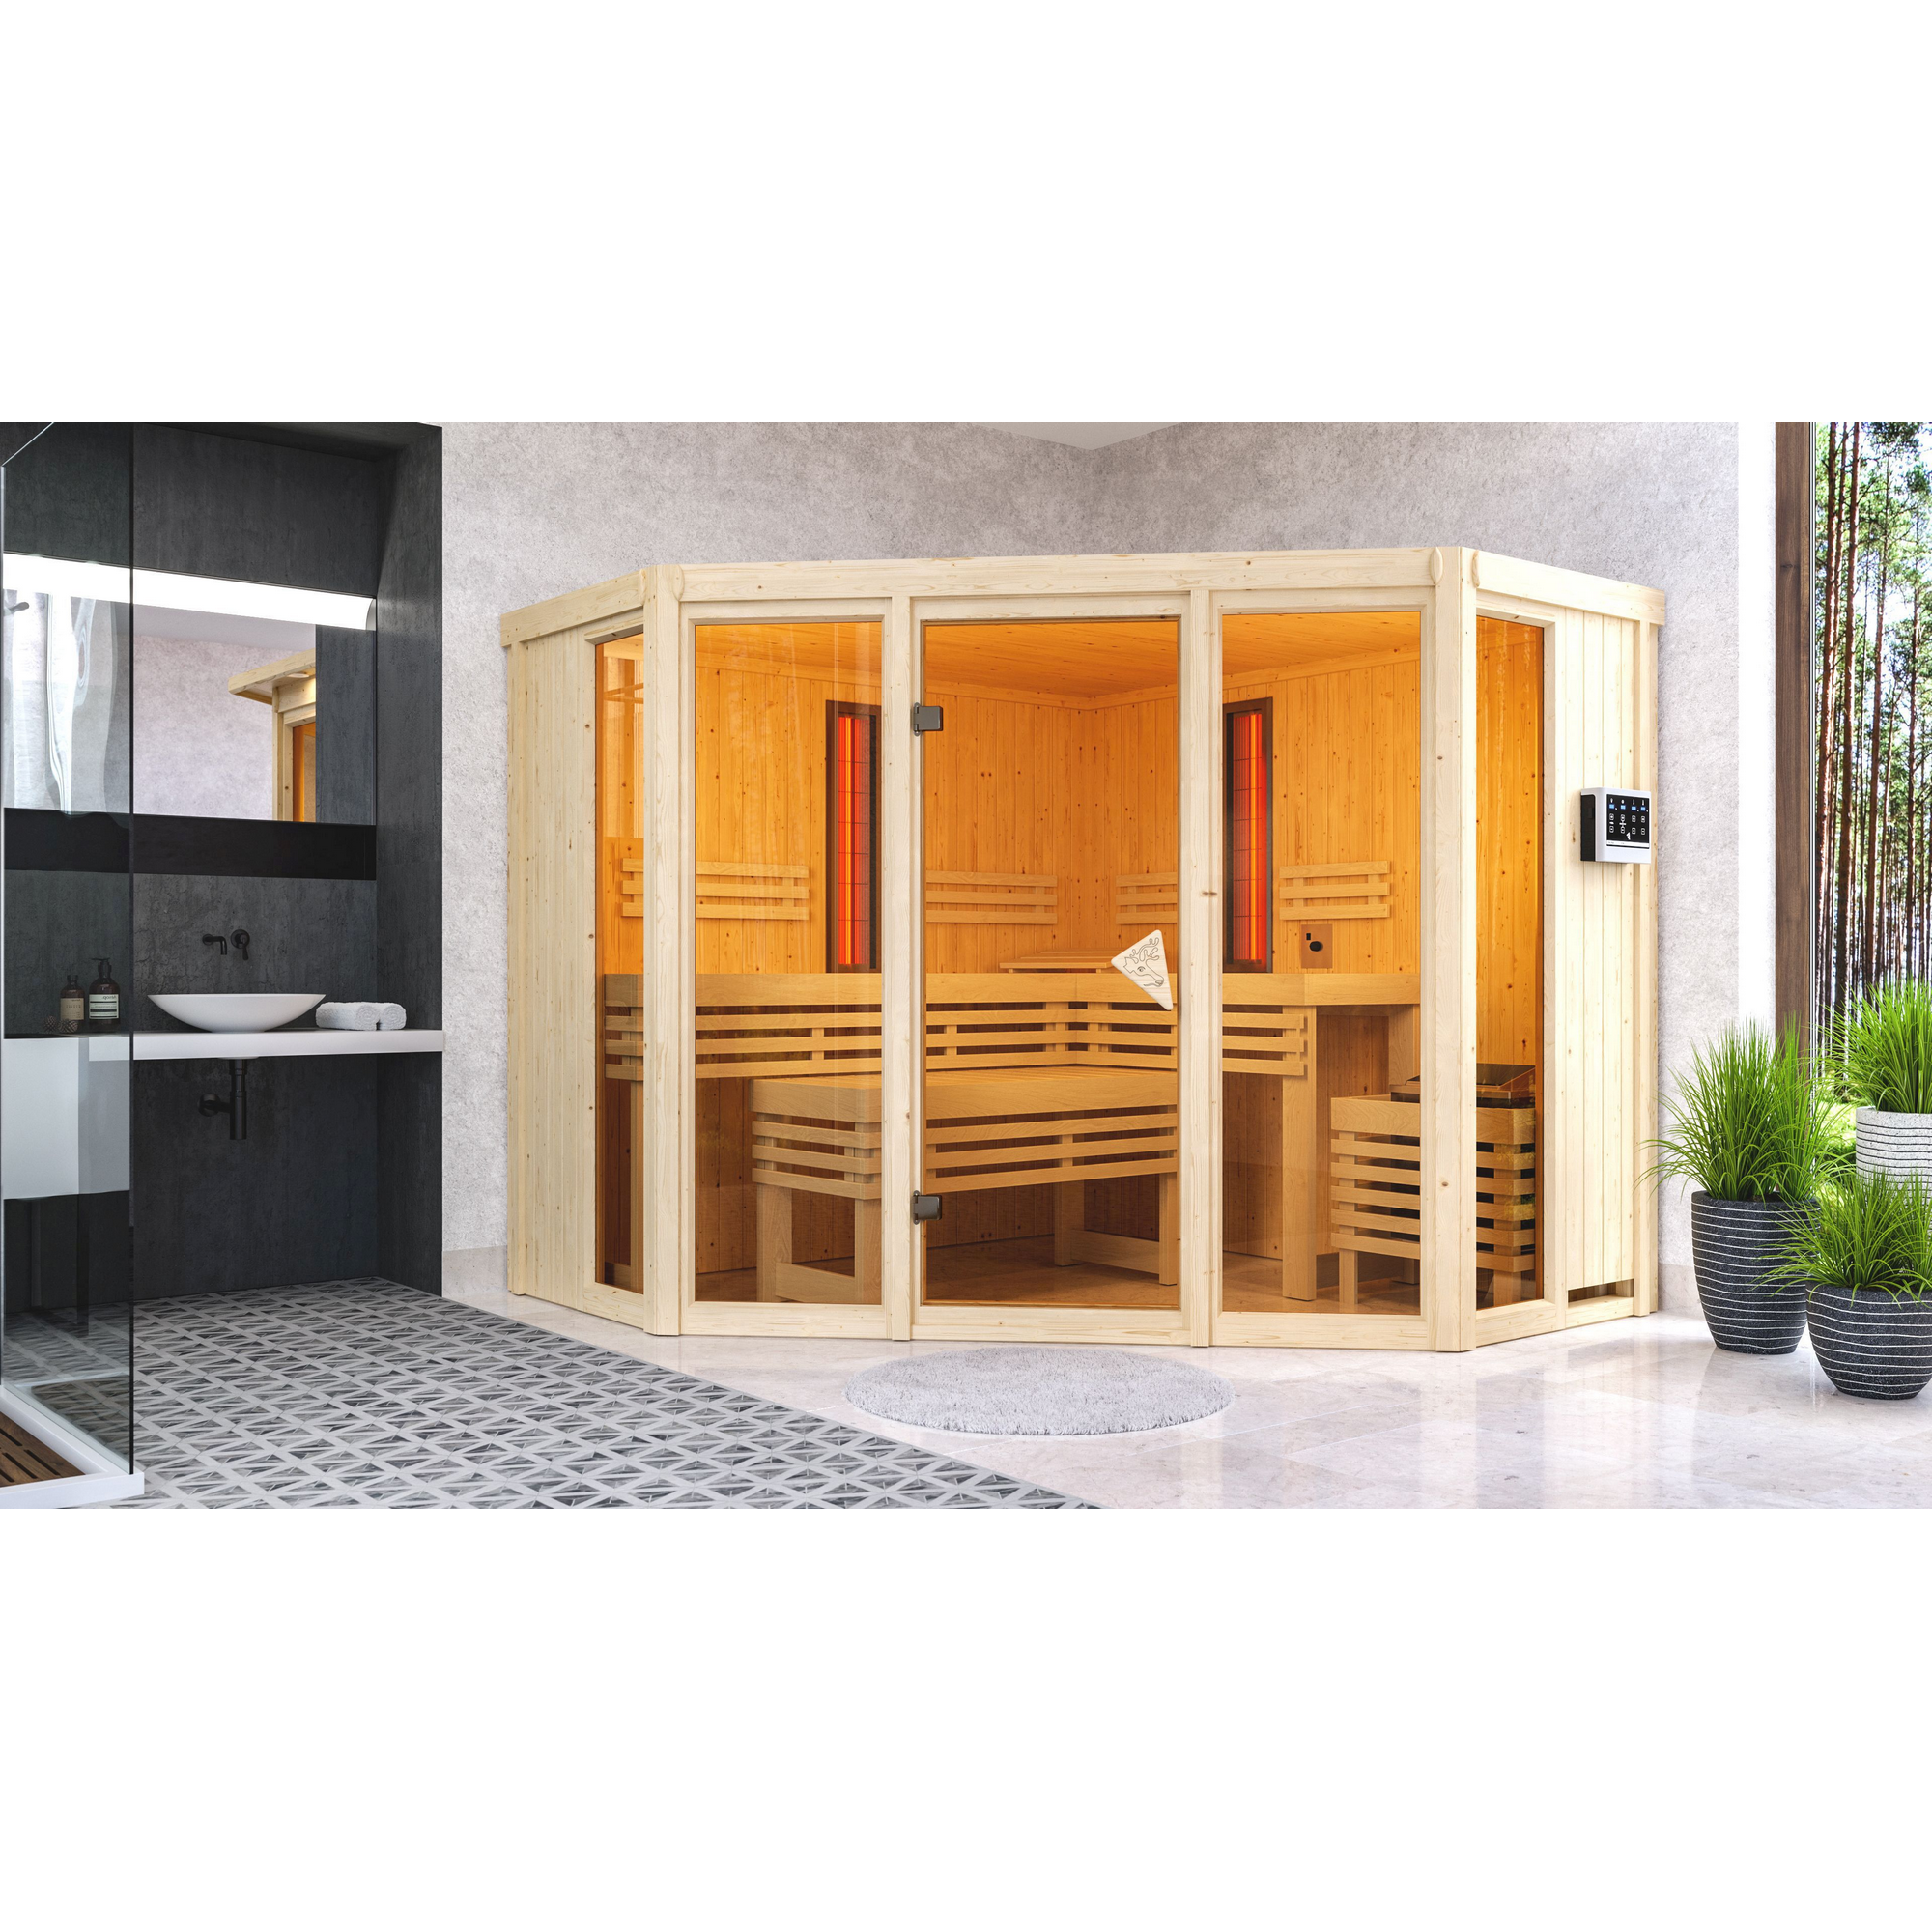 Infrarotkabine 'Aya' naturbelassen mit bronzierter Tür 9 kW Bio-Ofen externe Steuerung 231 x 231 x 198 cm + product picture